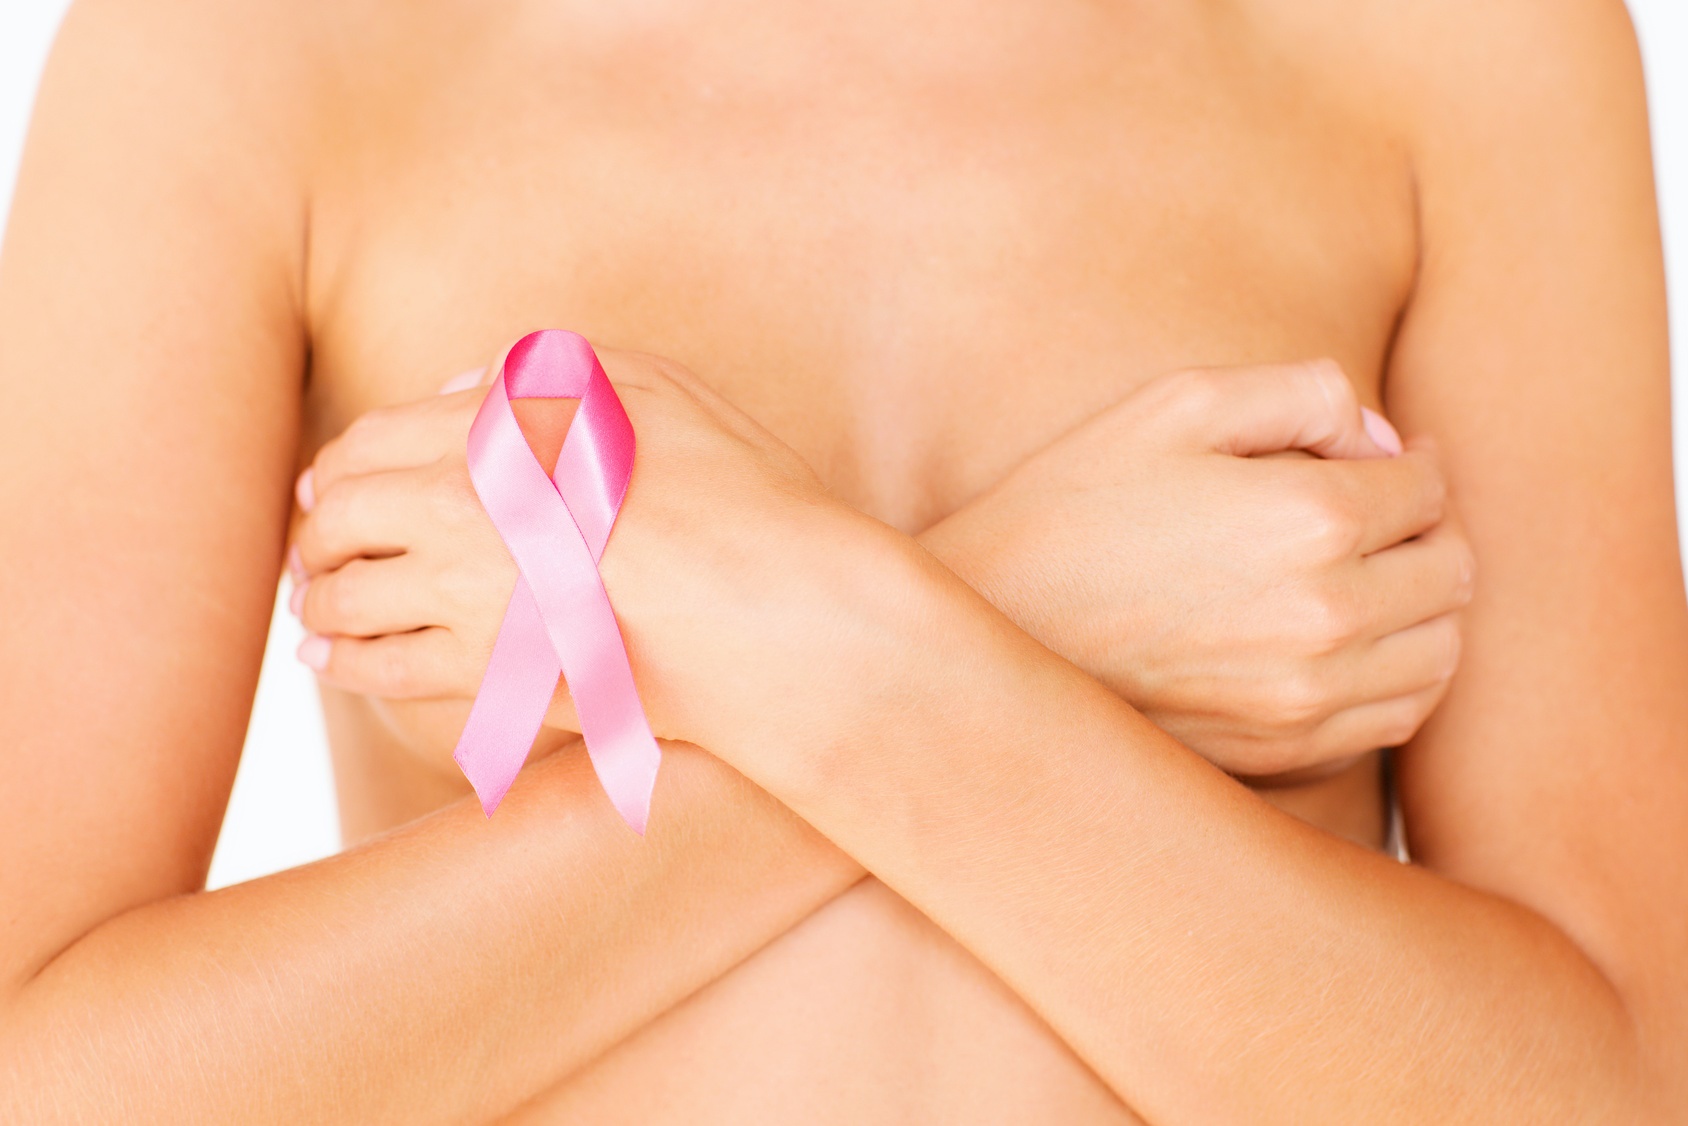 Καρκίνος του μαστού: Η απεικόνιση εντοπίζει ασθενείς που είναι απίθανο να ωφεληθούν από την ορμονική θεραπεία